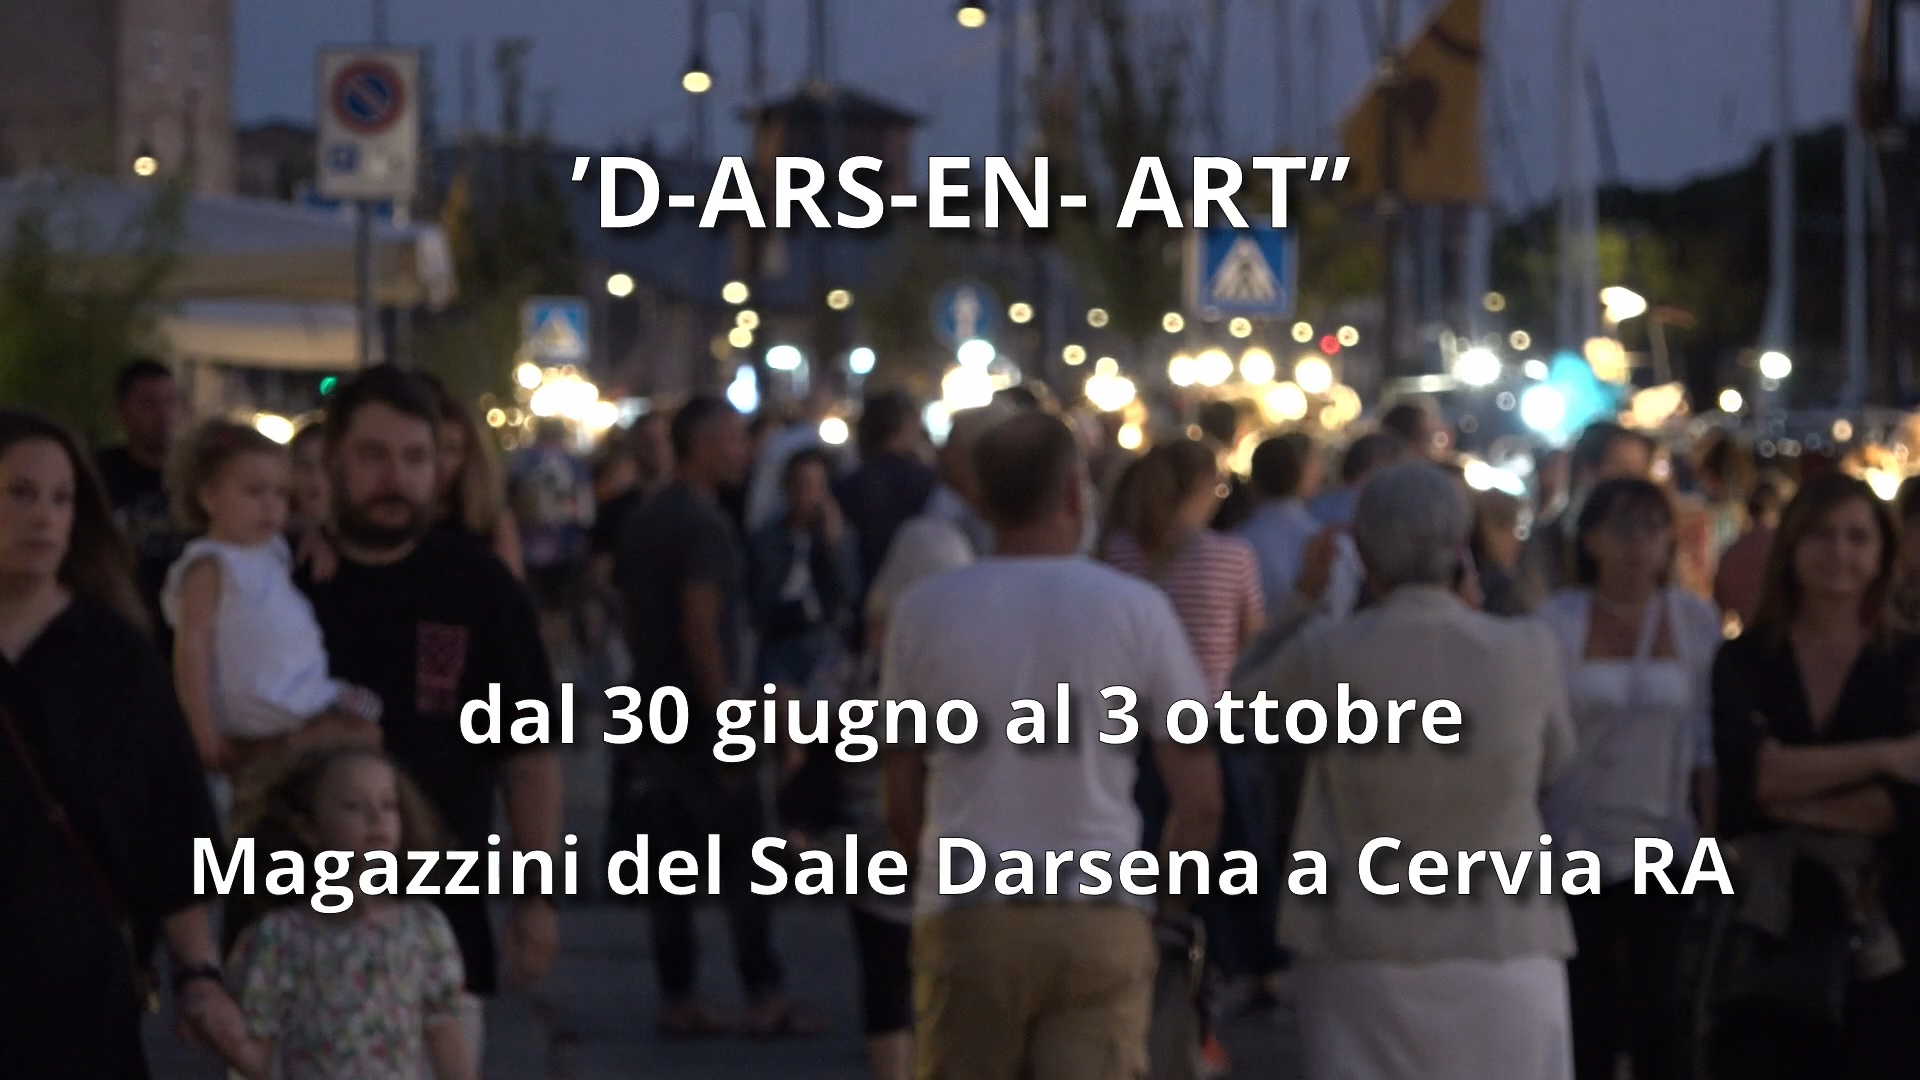 D-ARS-EN-ART: Magazzini del Sale Darsena a Cervia